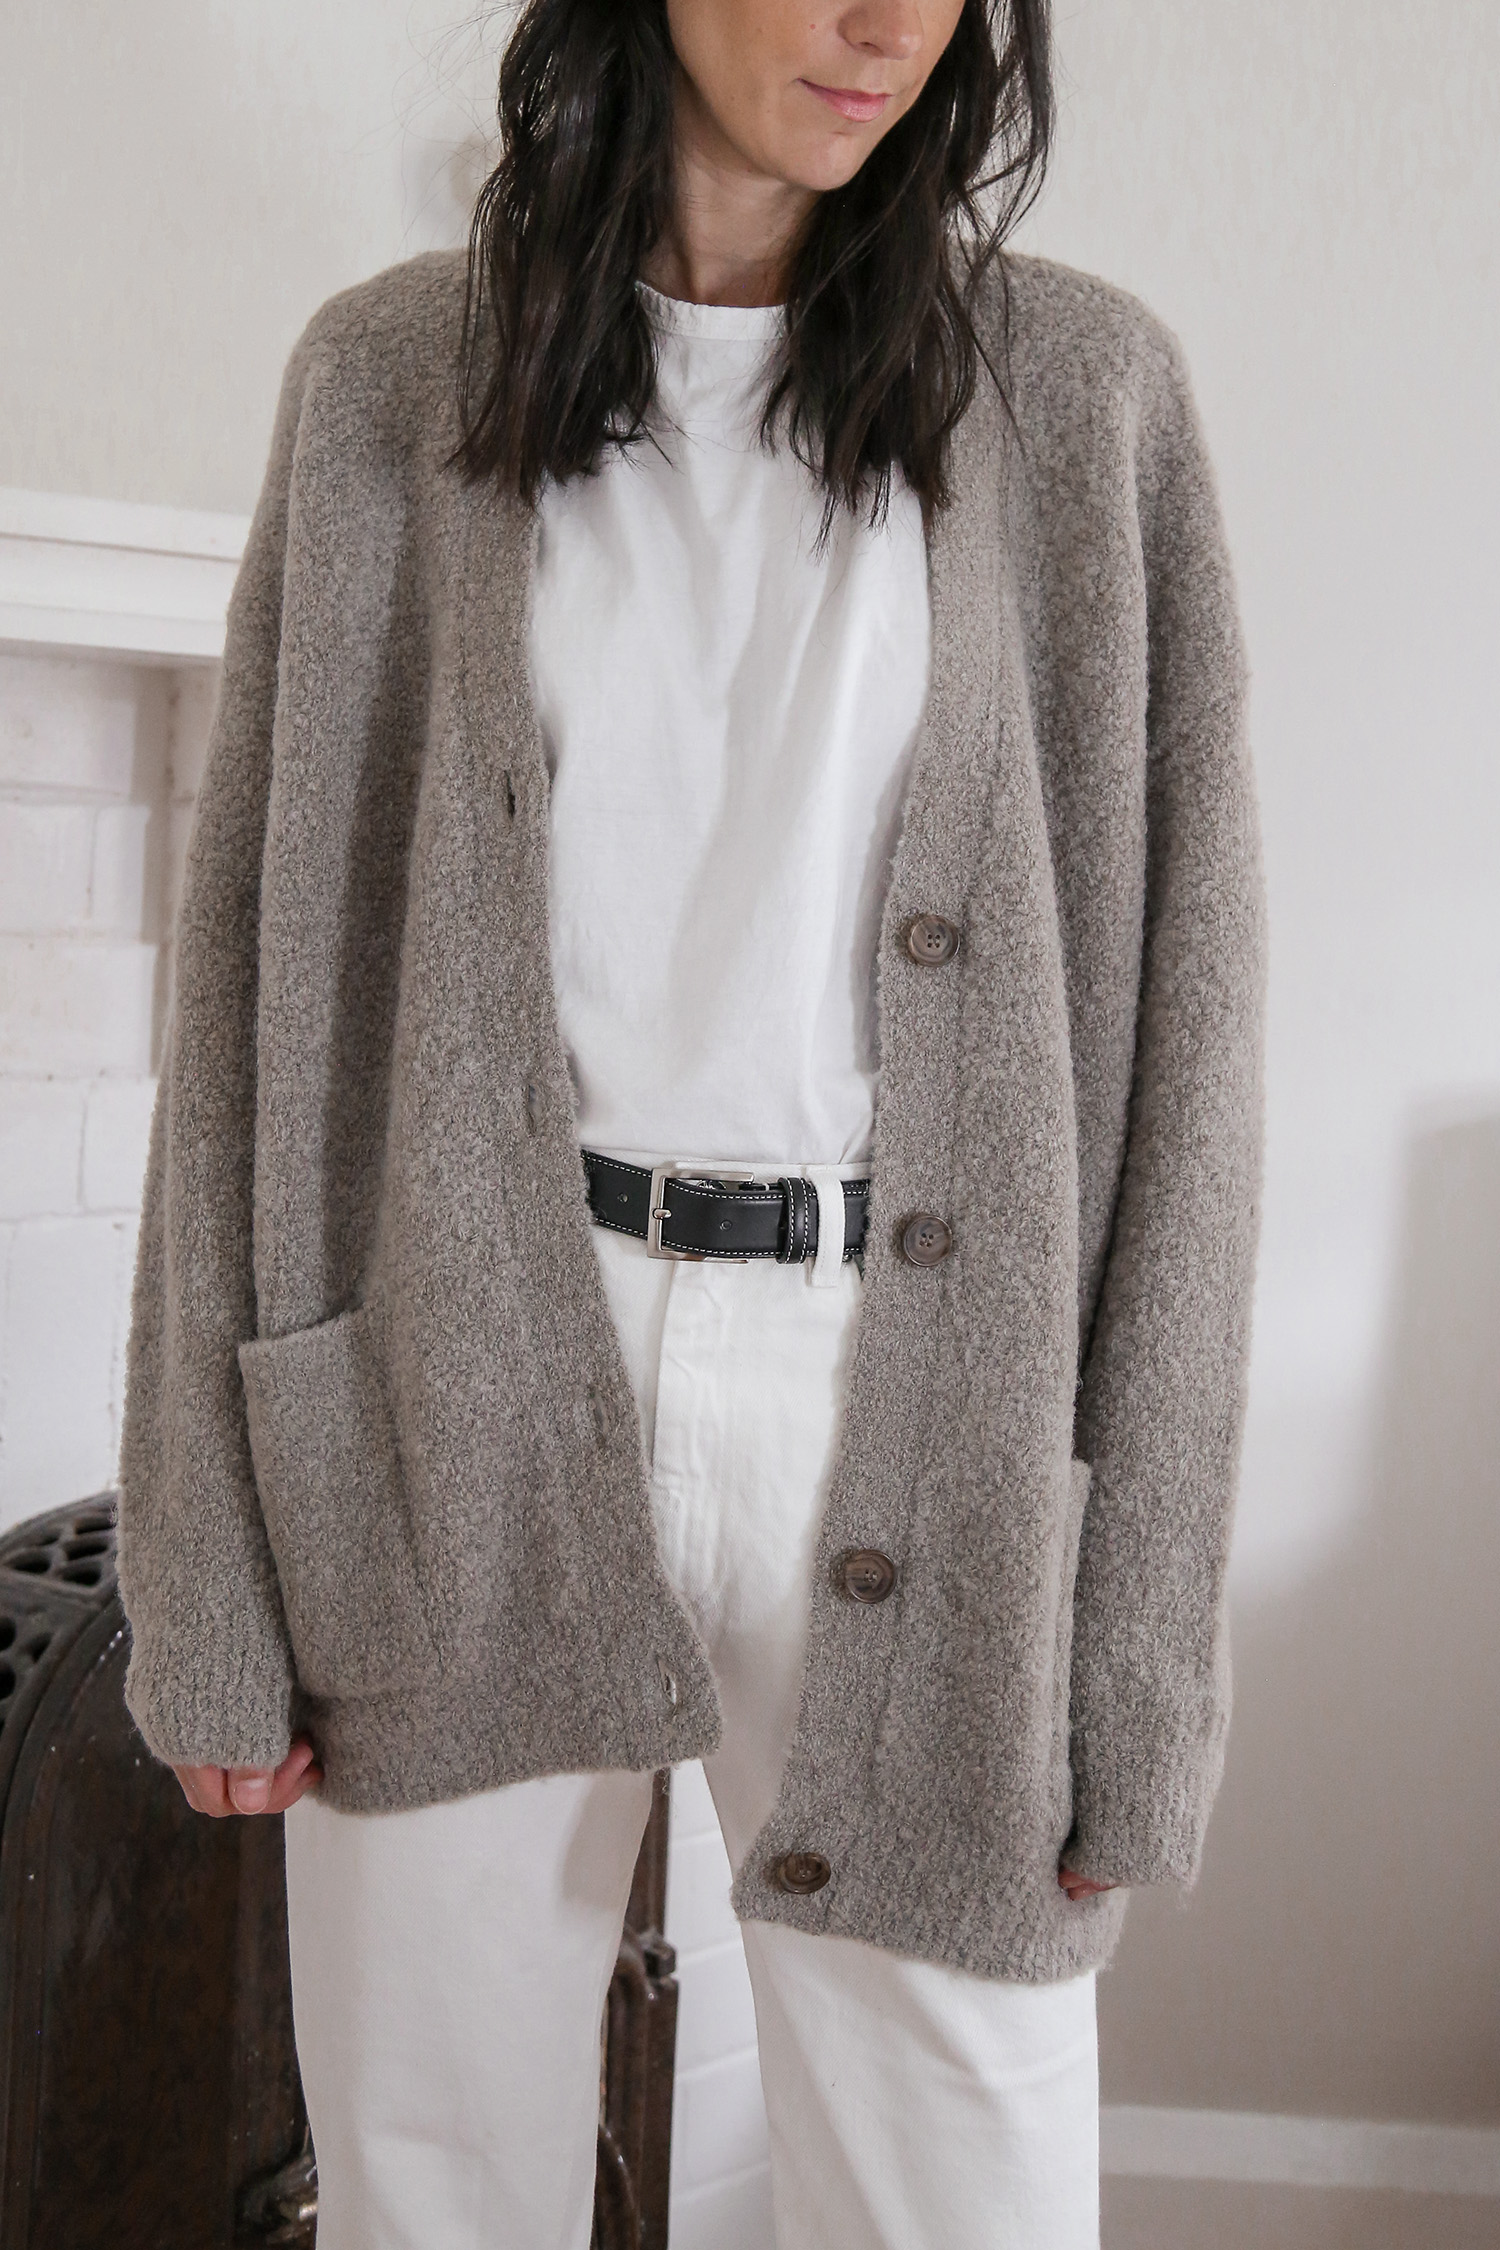 Sweater Coat – Jenni Kayne